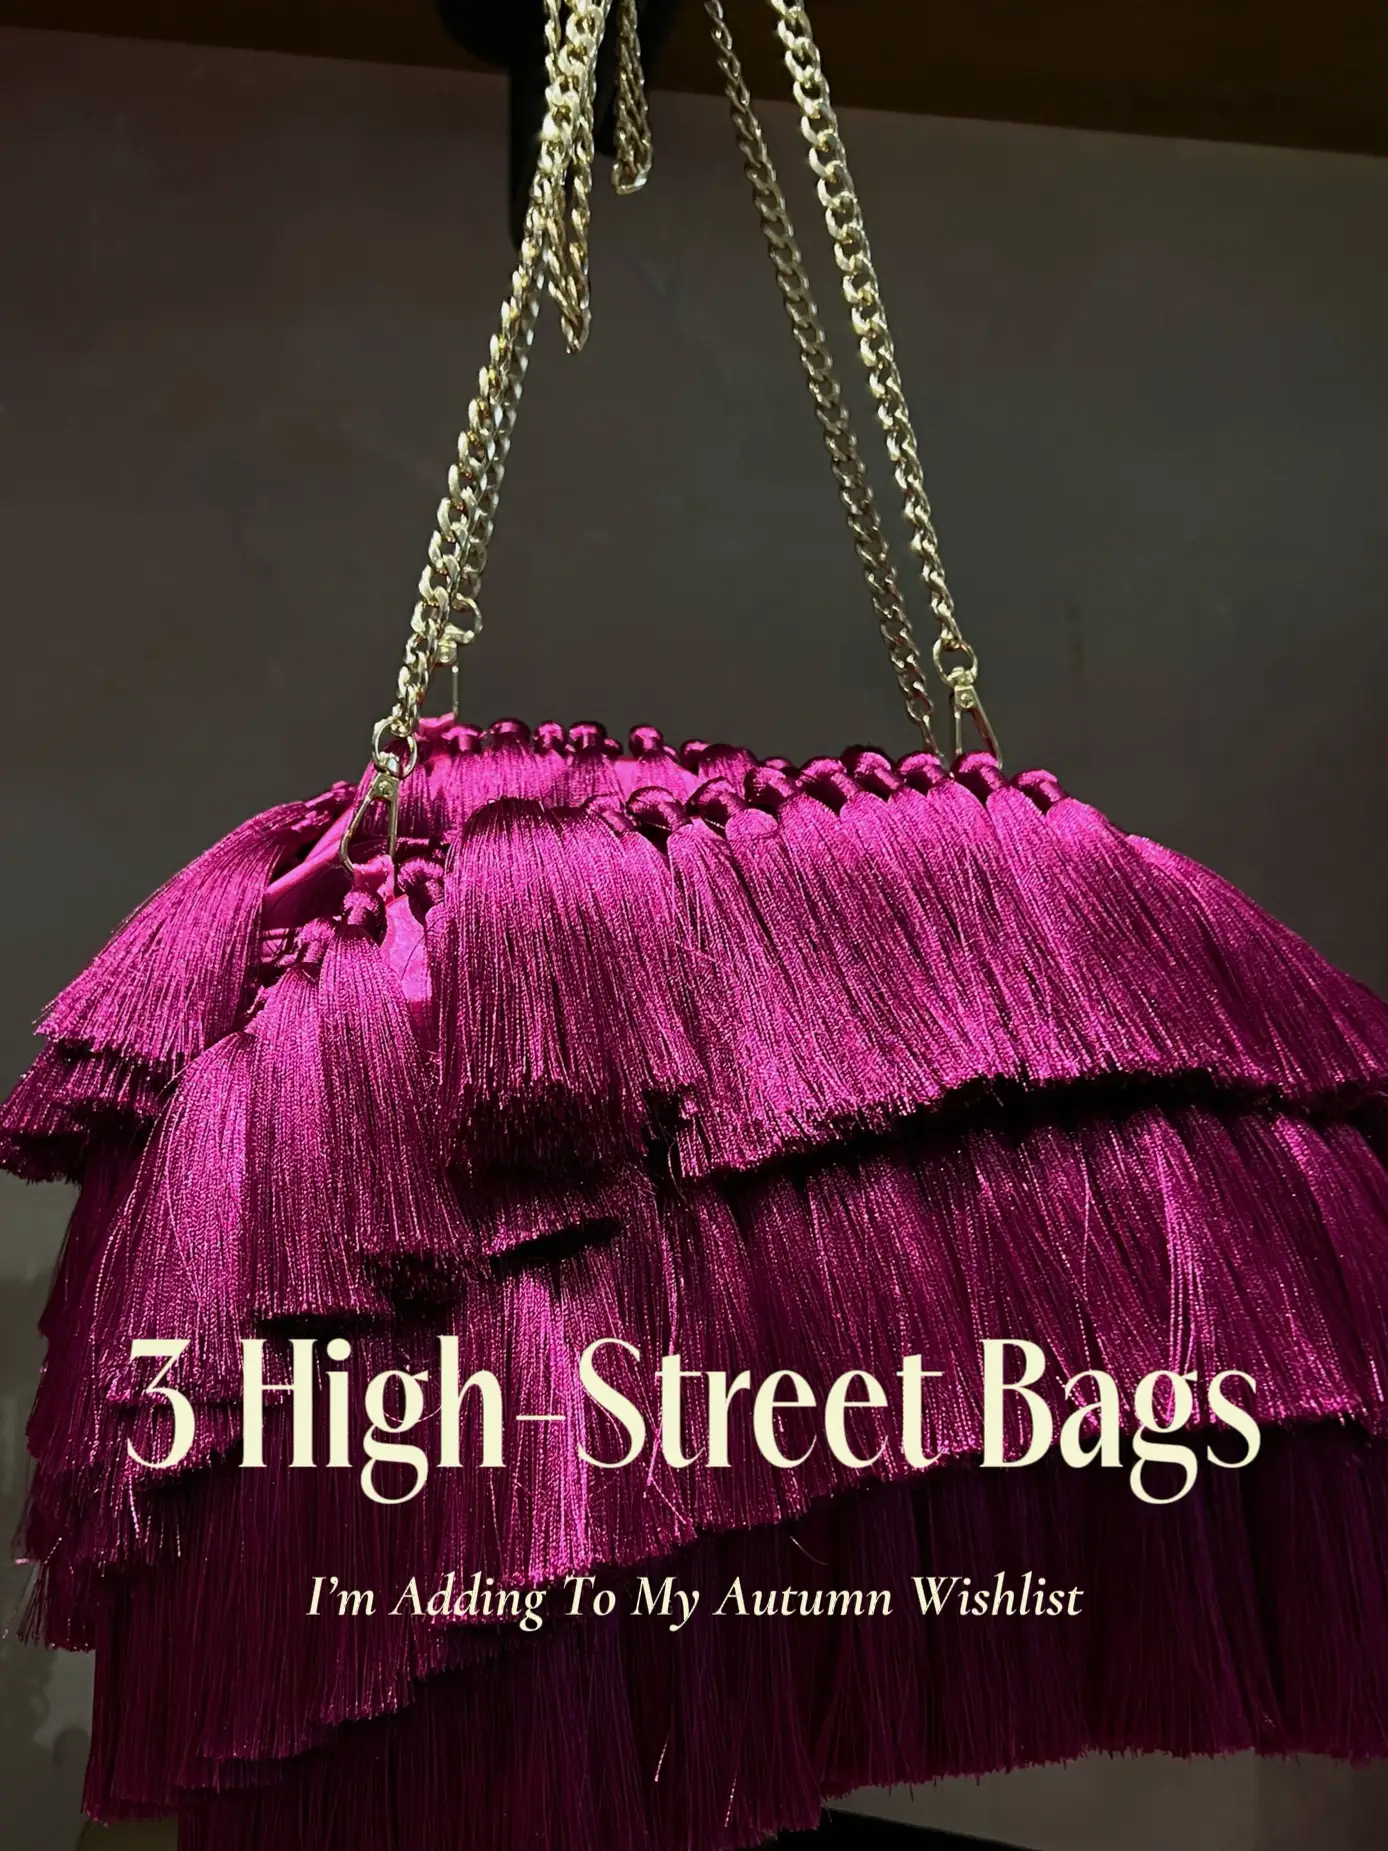 SHEIN, Bags, Purple Floral Shoulder Bag